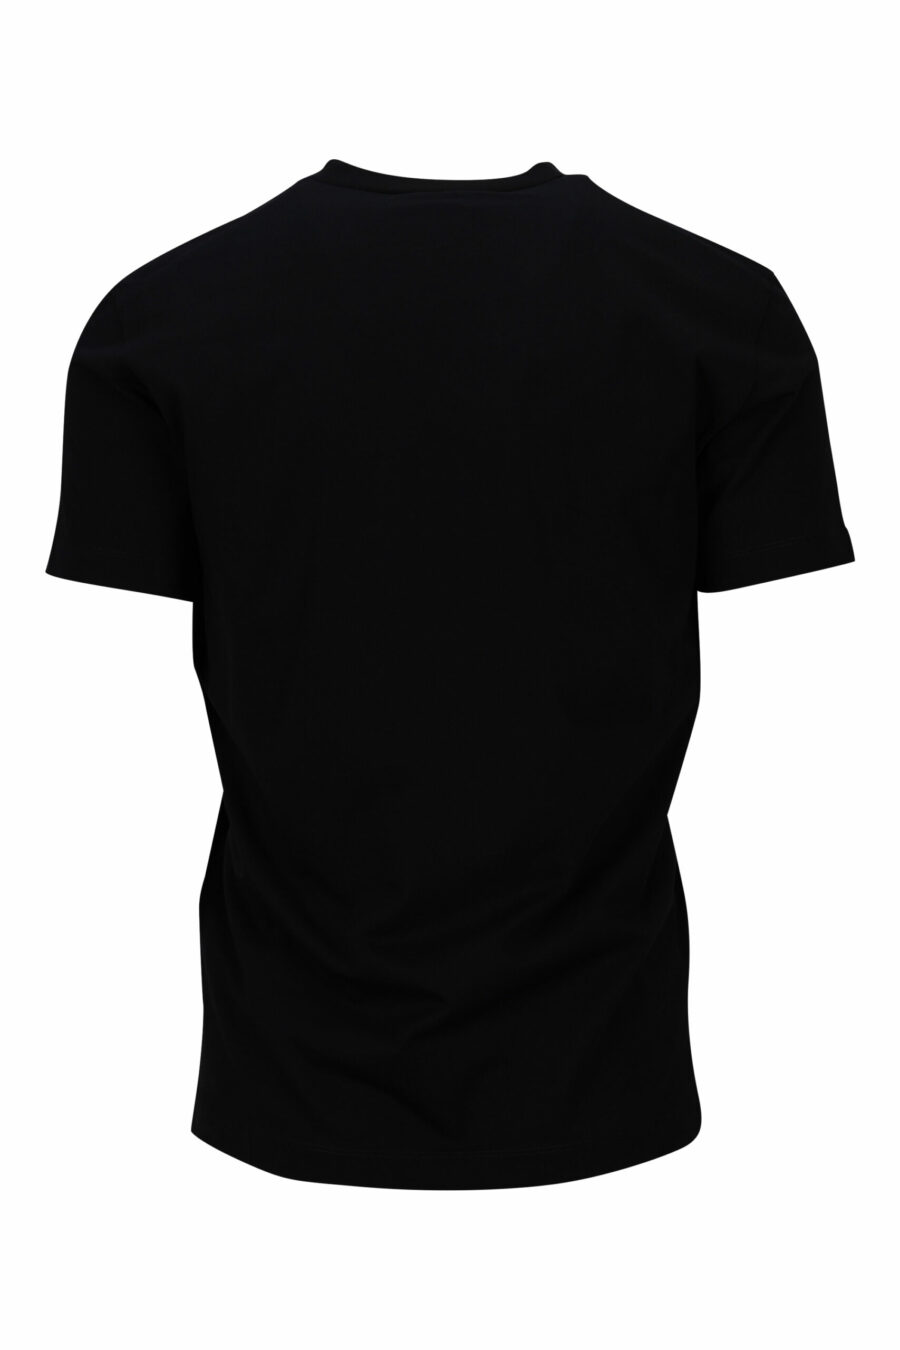 Schwarzes T-shirt mit Maxilogo "ceresio 9 milano" - 8054148504984 1 skaliert